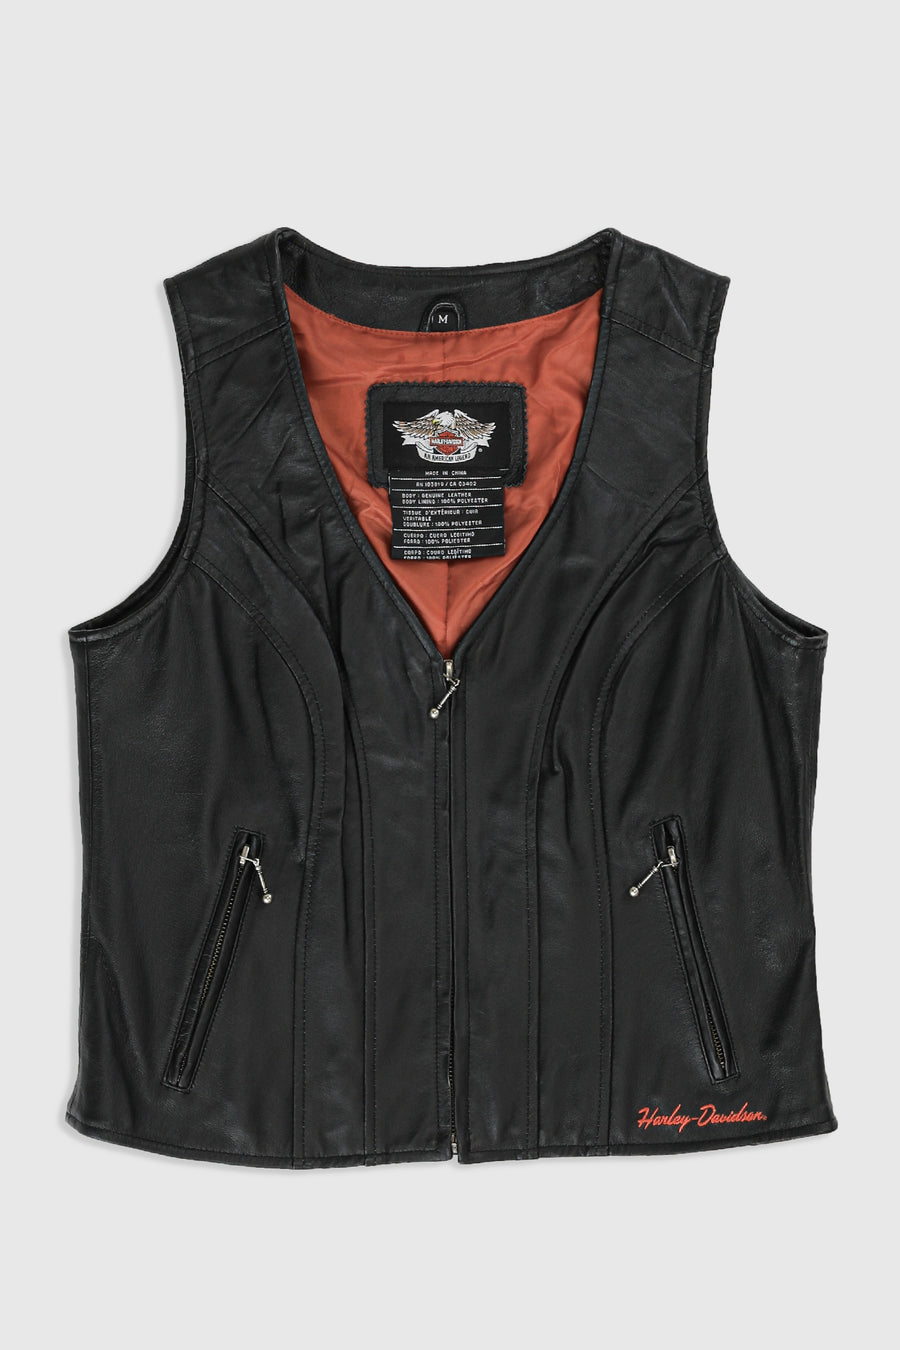 Vintage Harley Leather Vest